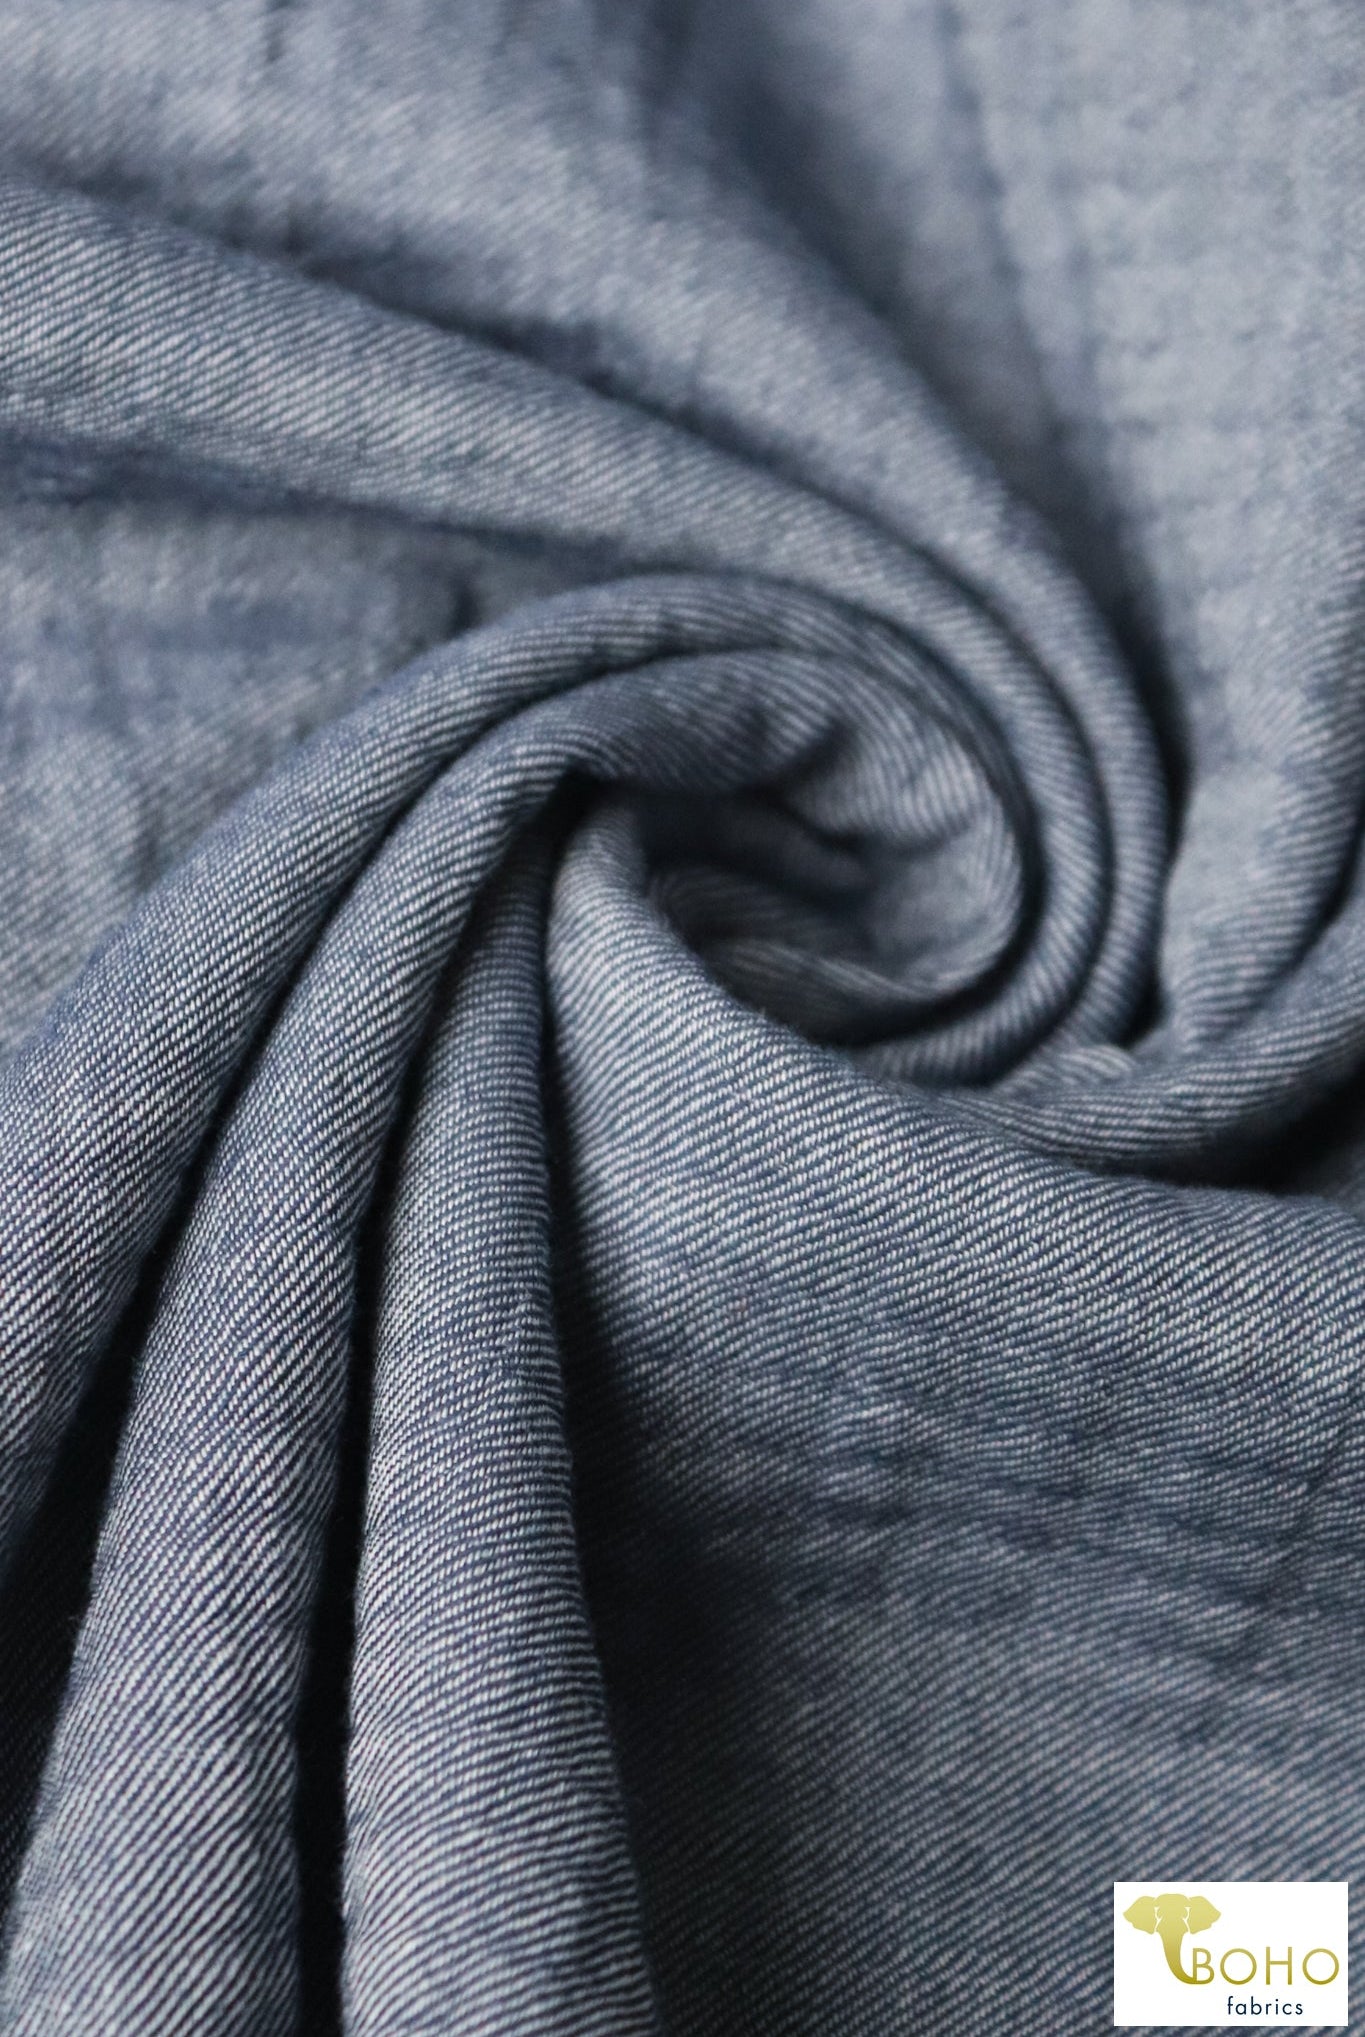 Poseidon Blue, Twill Woven - Boho Fabrics